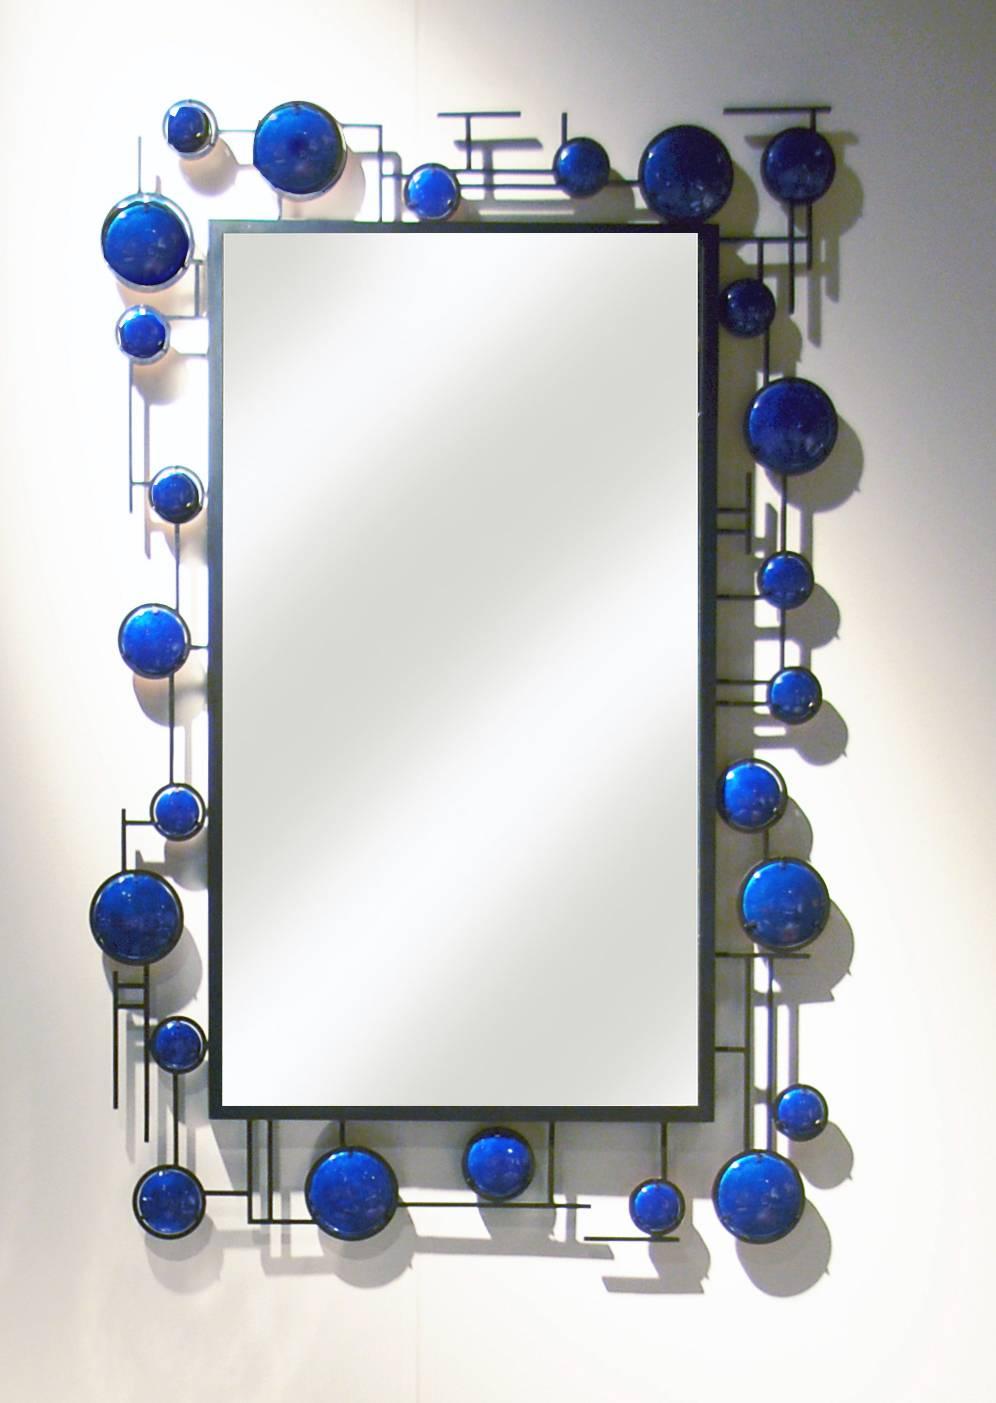 Ce miroir en émail bleu de Christophe Côme a été réalisé en cuivre et en émail bleu en 2016. La pièce peut être installée horizontalement ou verticalement et nous pouvons prendre des commandes de miroirs personnalisés. 

Côme travaille à Paris, en